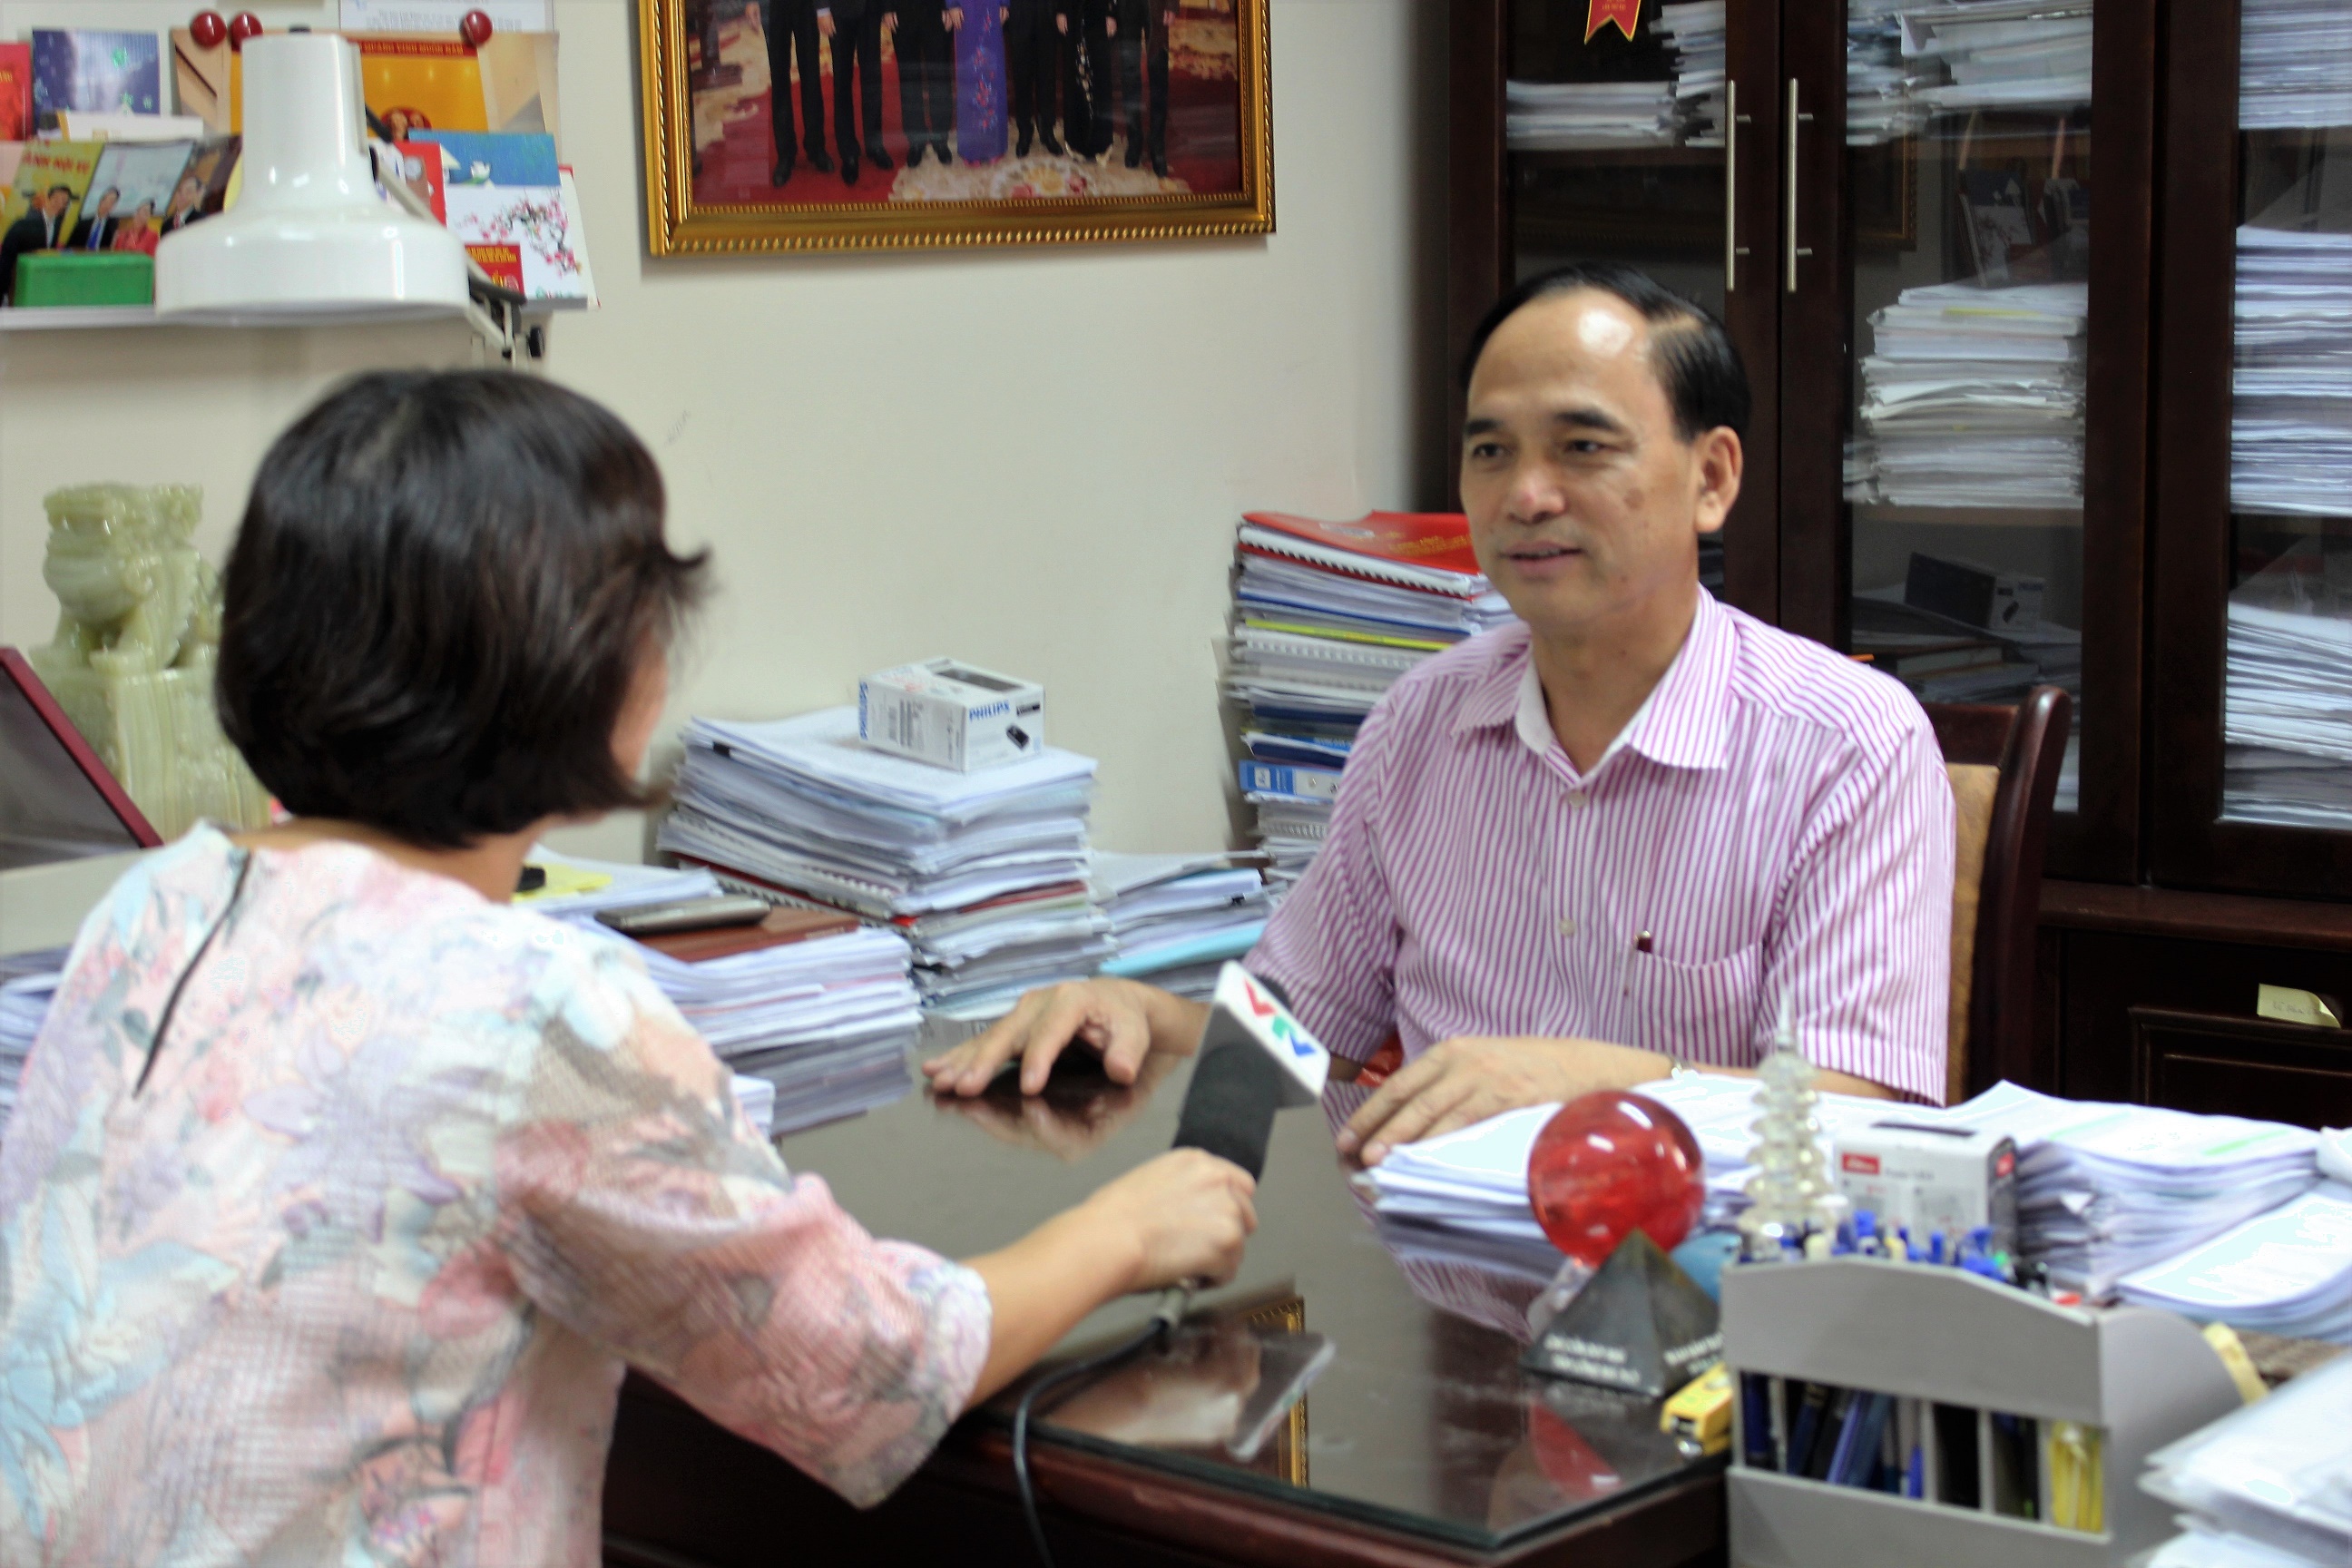 VTV1 – Đài truyền hình Việt Nam phỏng vấn TS. Phạm Văn Tác, Ủy viên Ban cán sự, Vụ trưởng Vụ Tổ chức cán bộ về các nội dung liên quan đến Đổi mới phong cách thái độ phục vụ hướng tới sự hài lòng của người bệnh